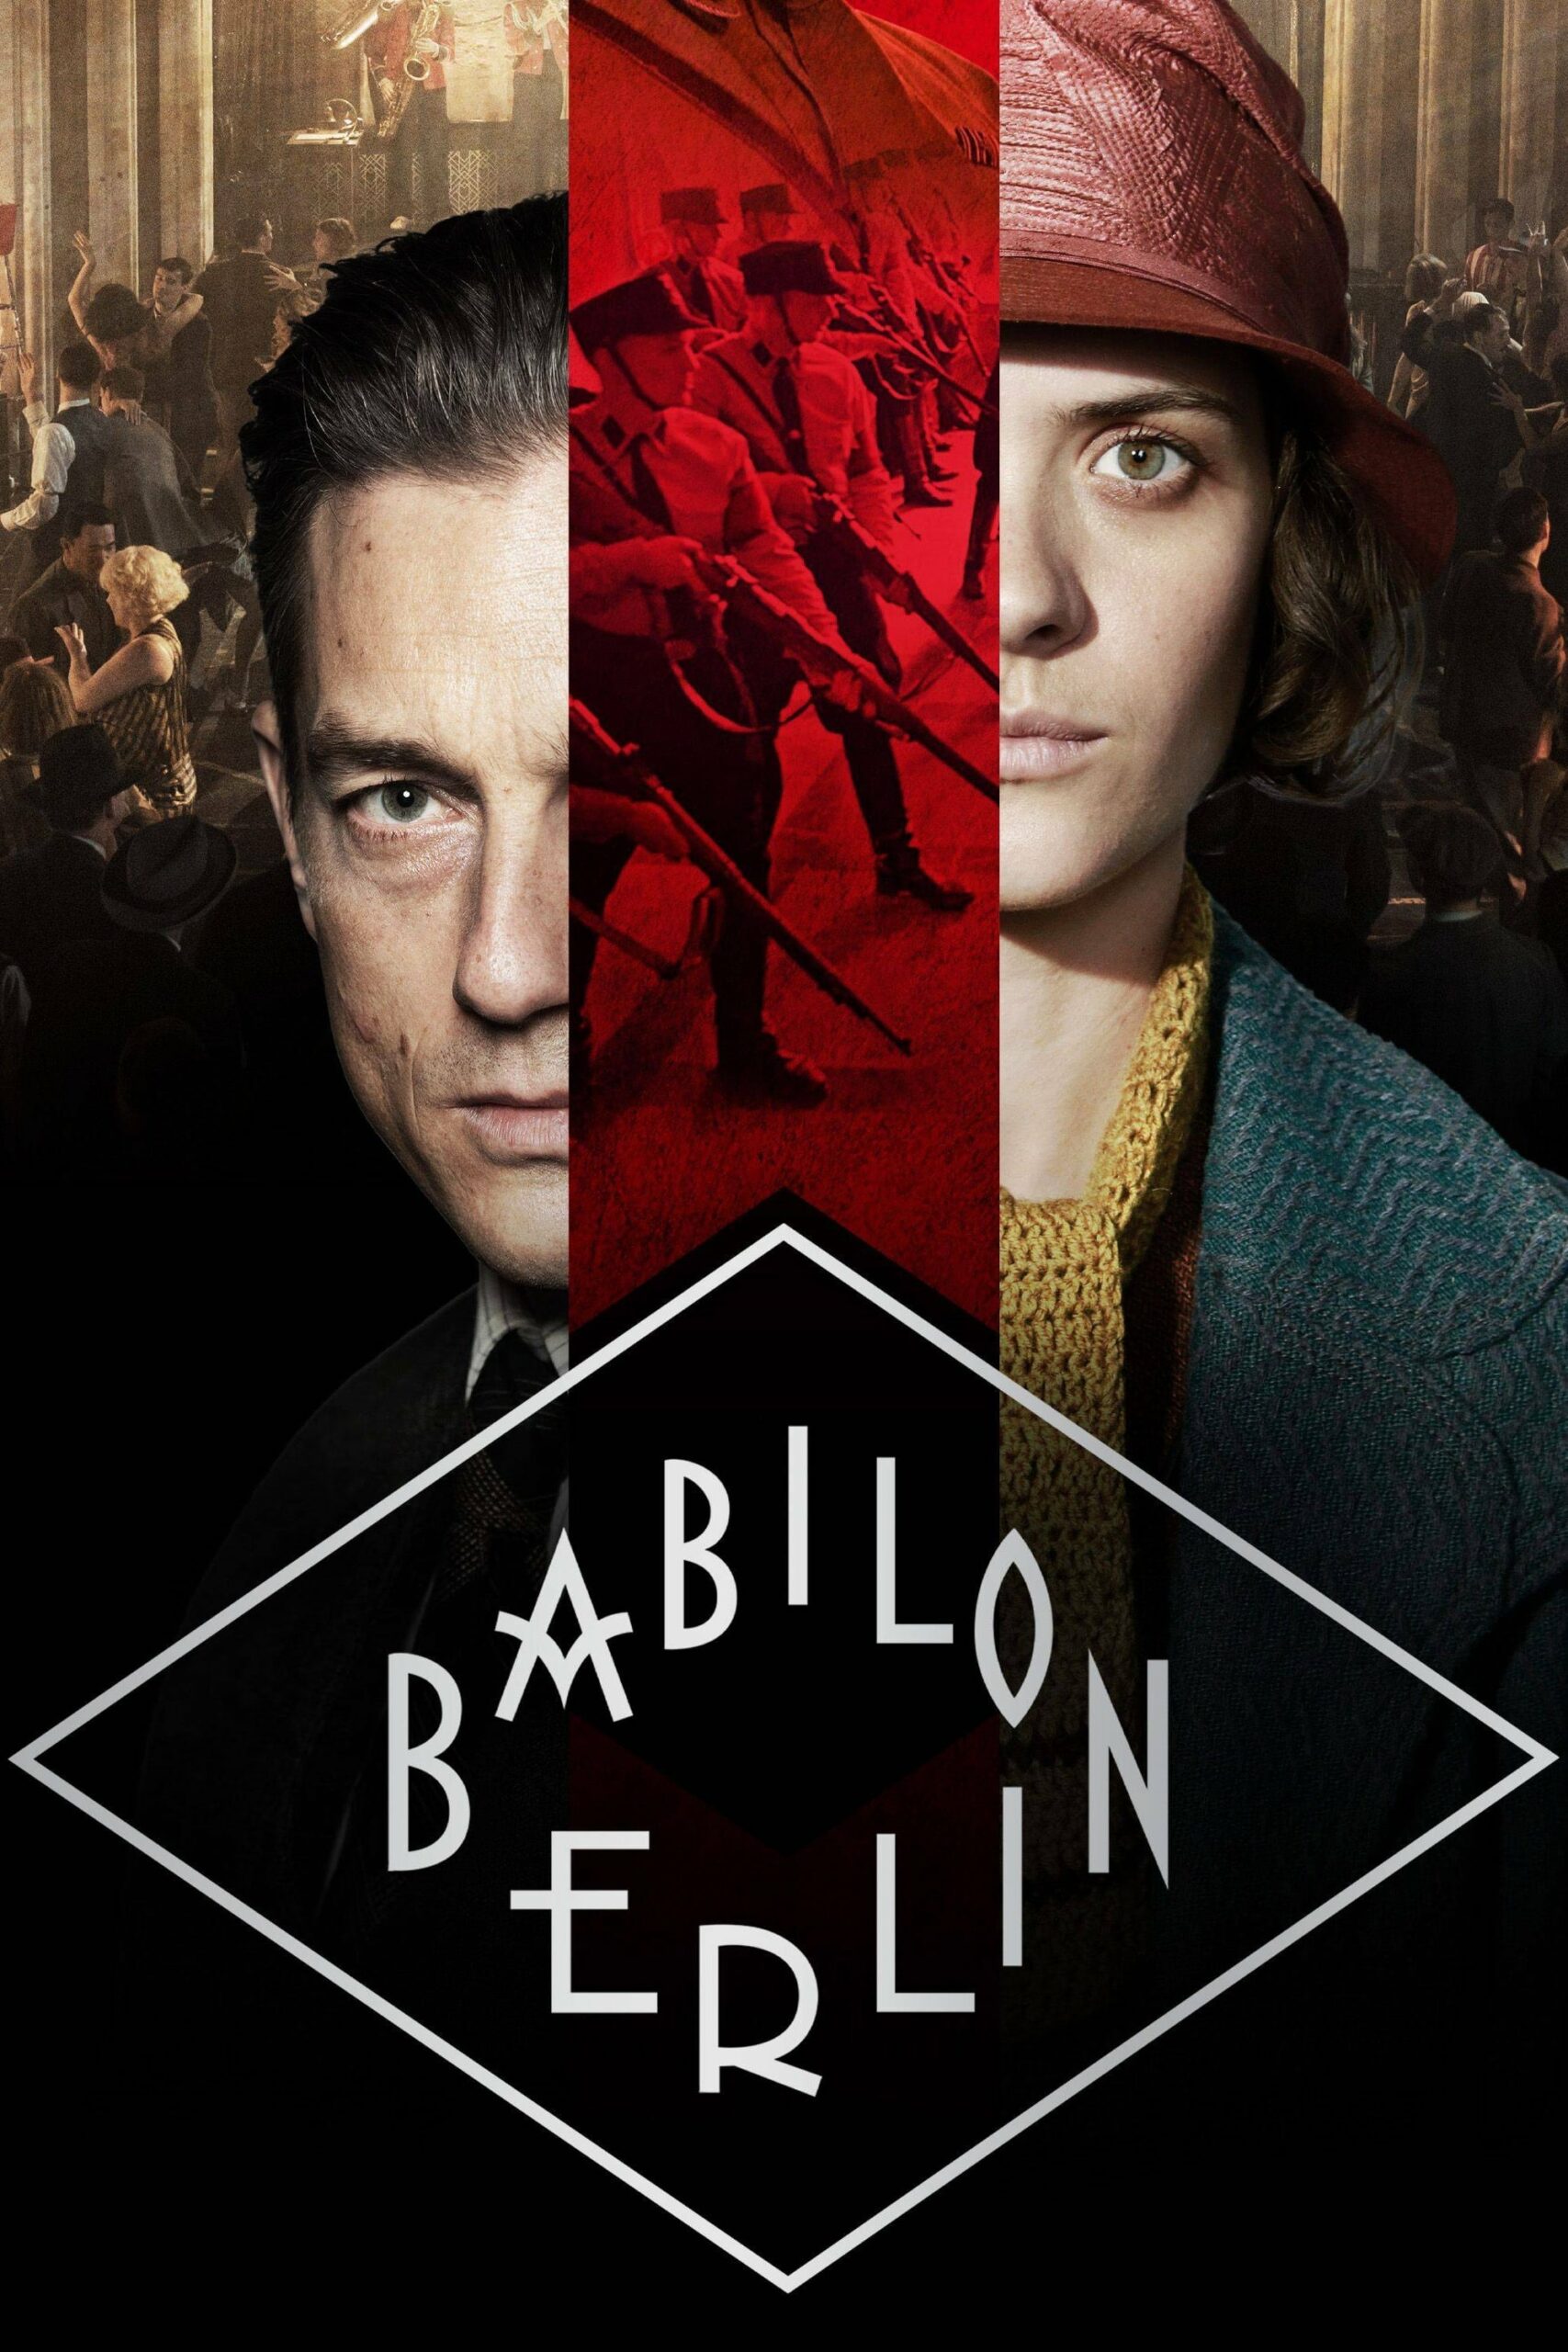 Plakát pro film “Babylon Berlín”